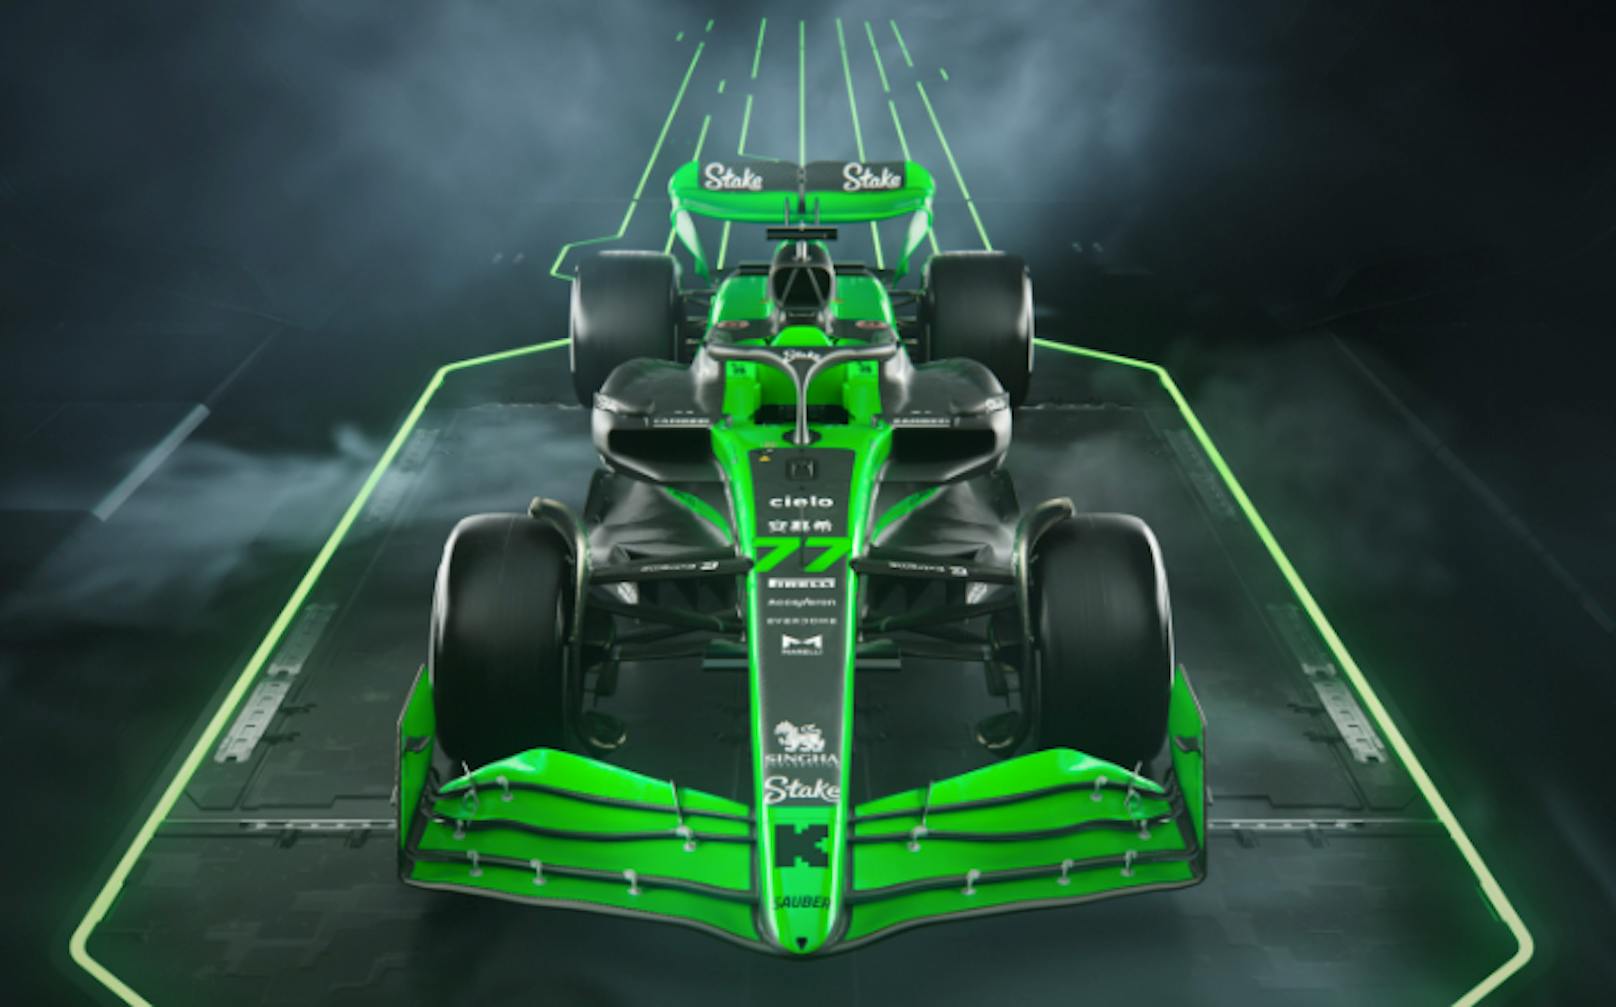 Für das Formel-1-Team von Sauber startet eine neue Ära. Neben einer Namensänderung zu "Stake" gibt es für den C44 ein komplett neues Design.